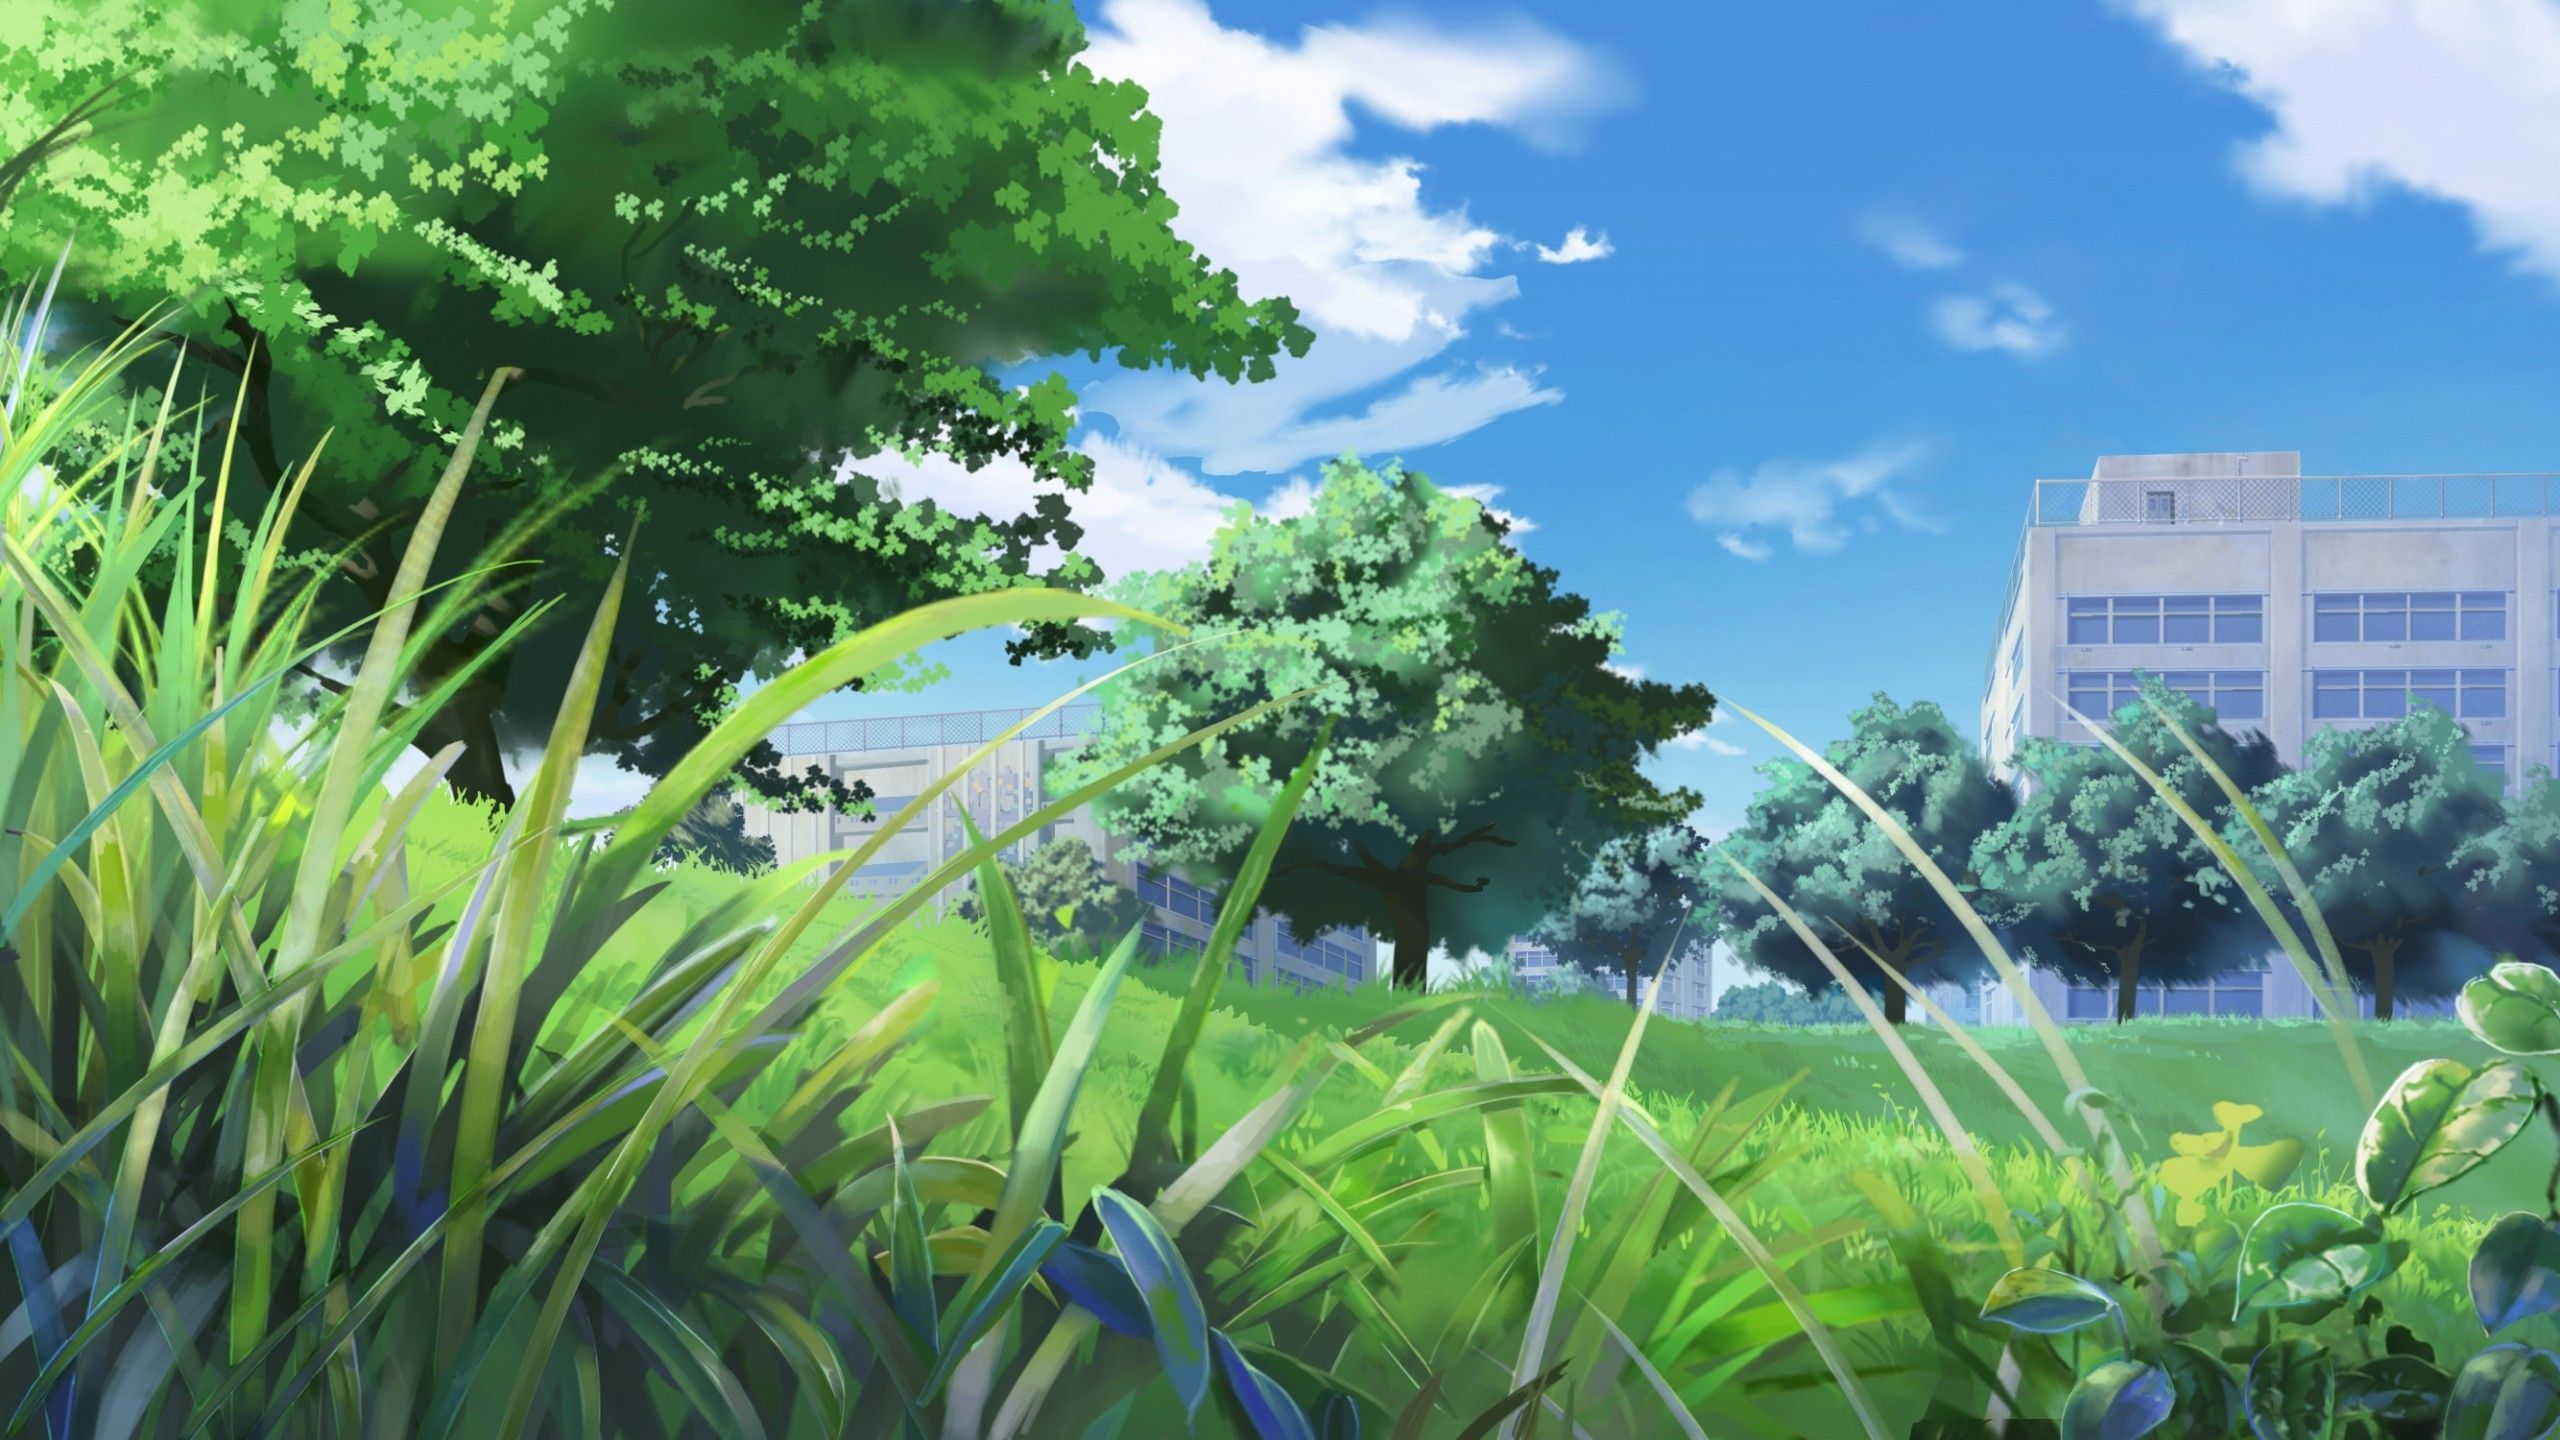 Download 2560x1440 Anime Landscape, School, Field, Grass, Trees